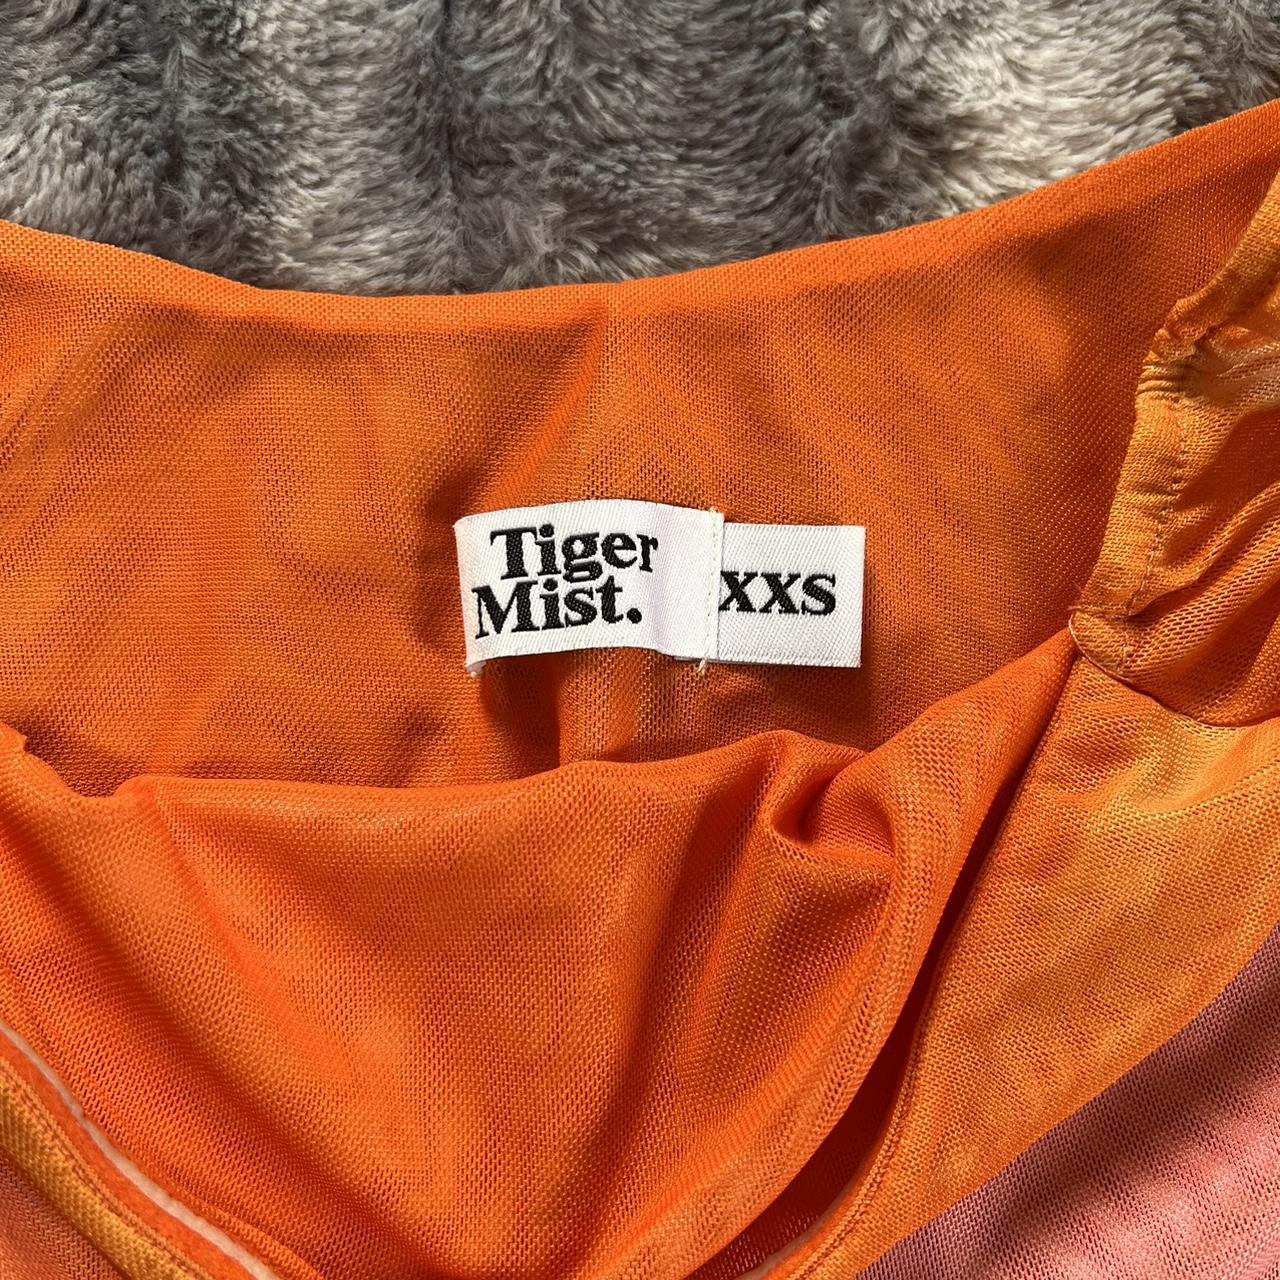 Tiger Mist mesh floral top and skirt set ⋆｡𖦹°‧★... - Depop